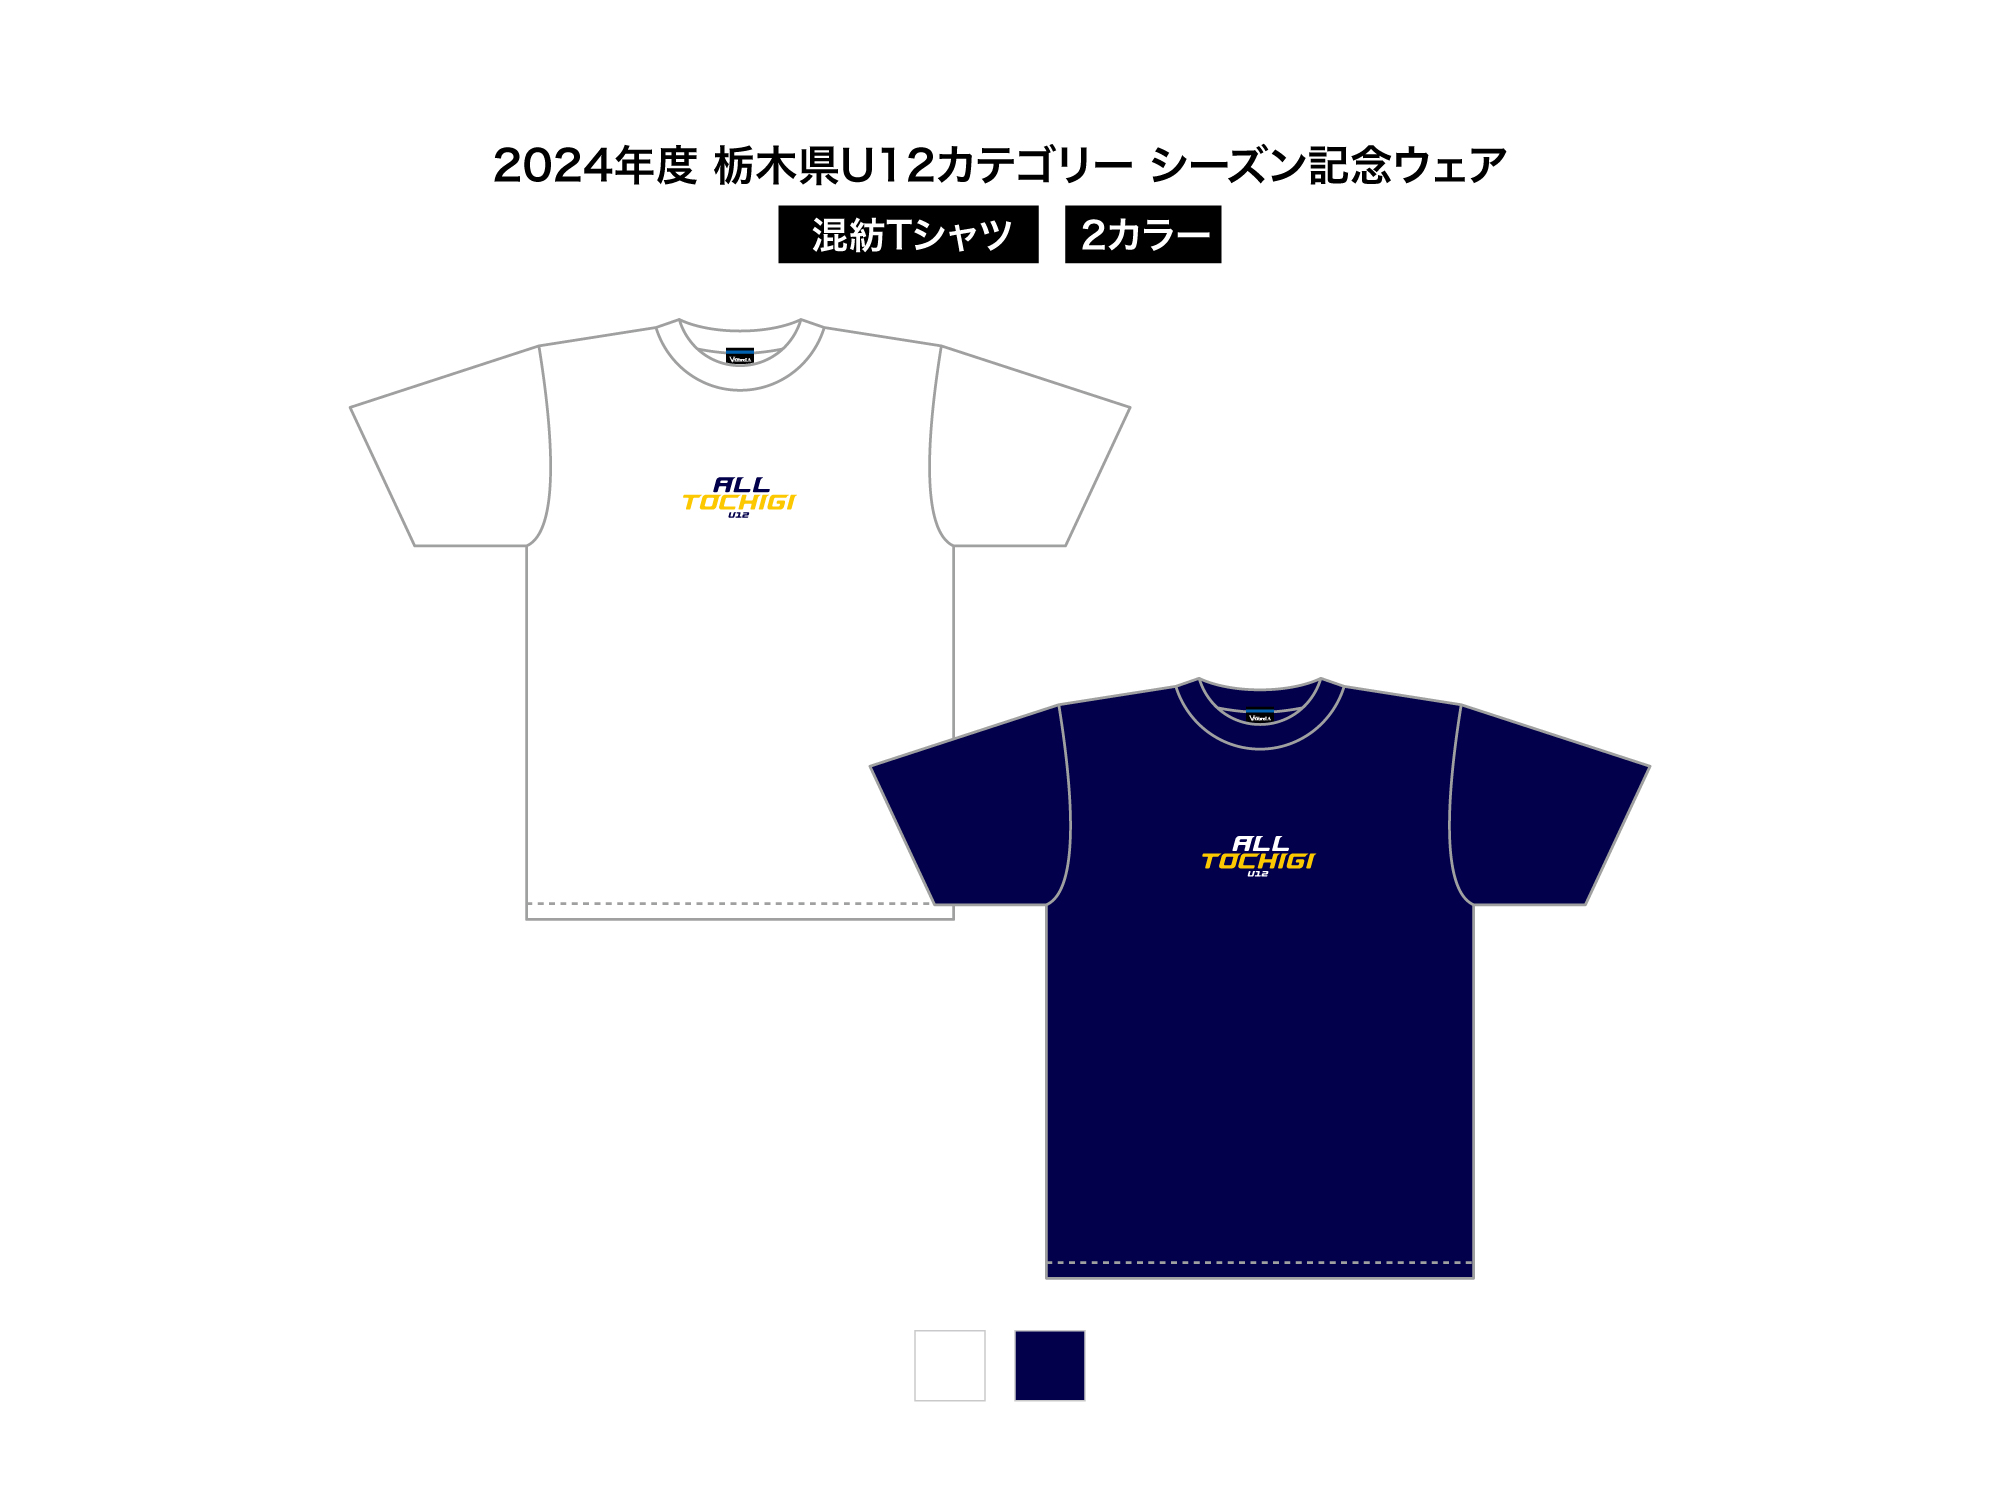 2024 栃木県U12 シーズン記念ウェア 混紡Tシャツ 写真1